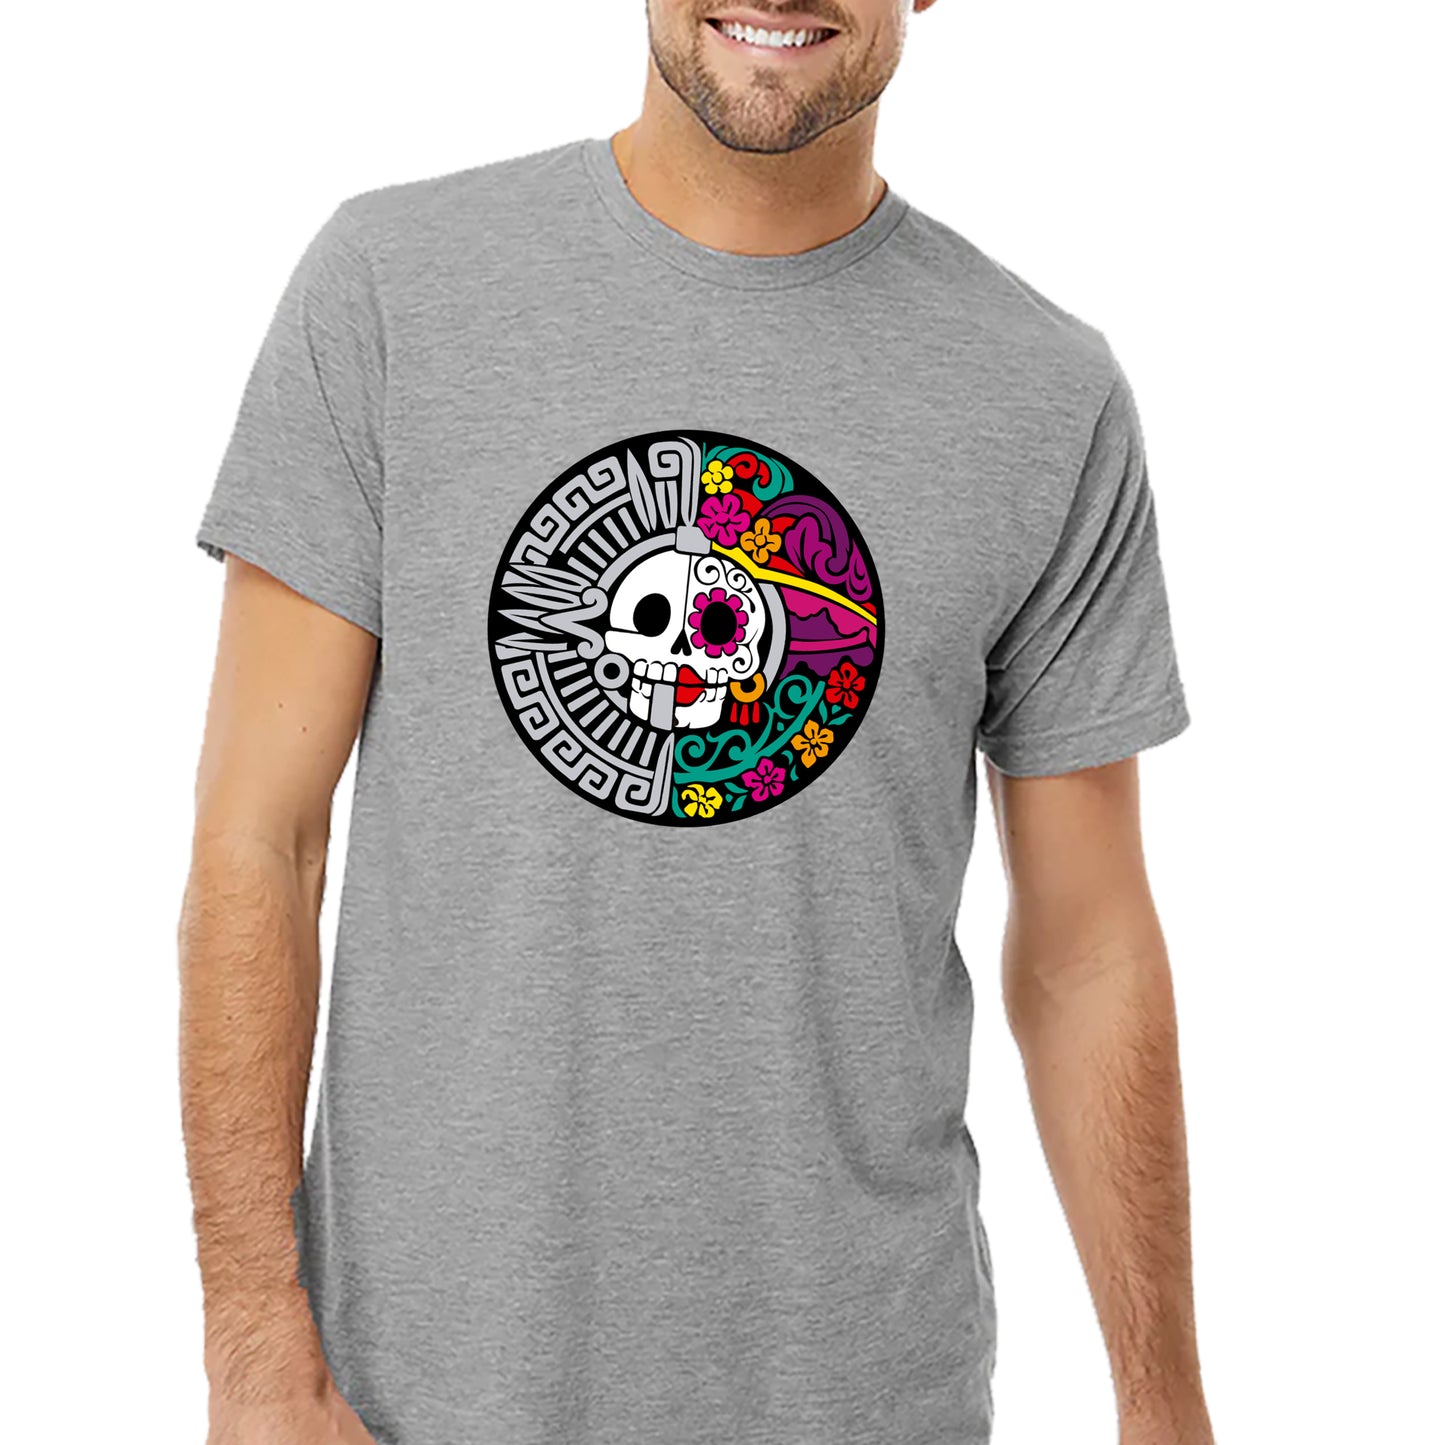 Mayan Circulo T-shirt